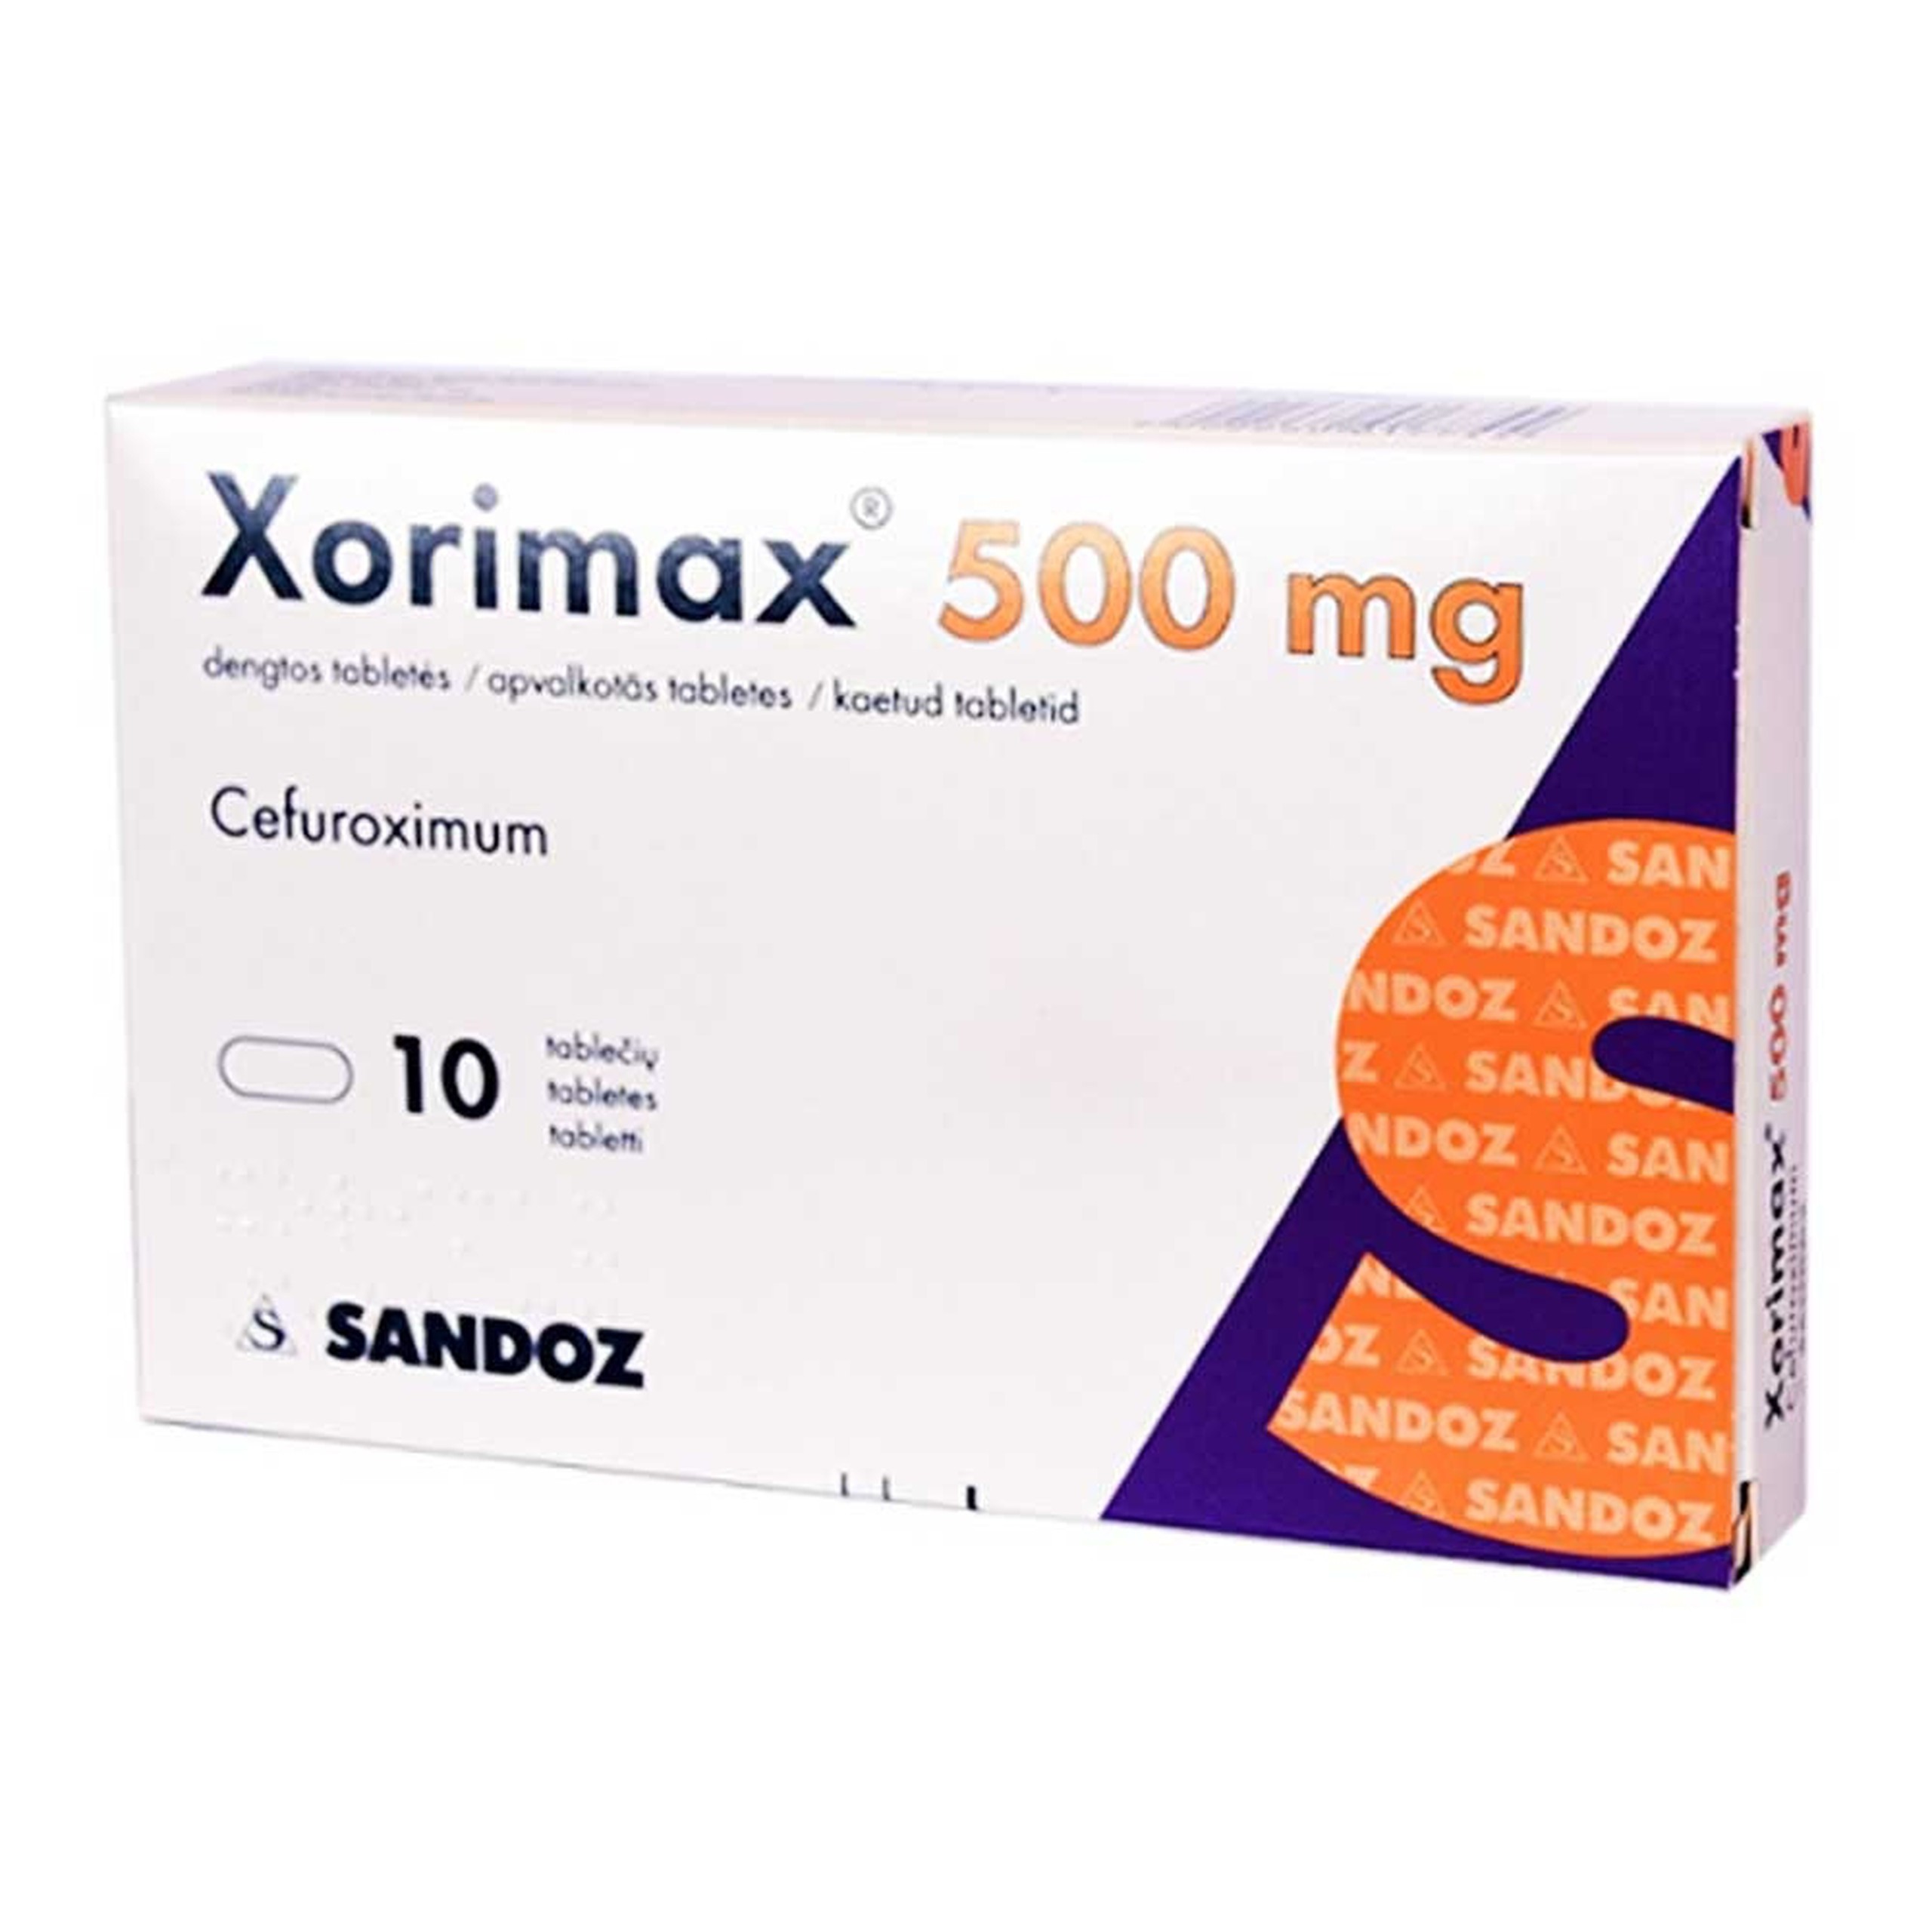 Thuốc Xorimax 500mg Sandoz điều trị các bệnh lý viêm xoang cấp, viêm tai giữa cấp tính (1 vỉ x 10 viên)